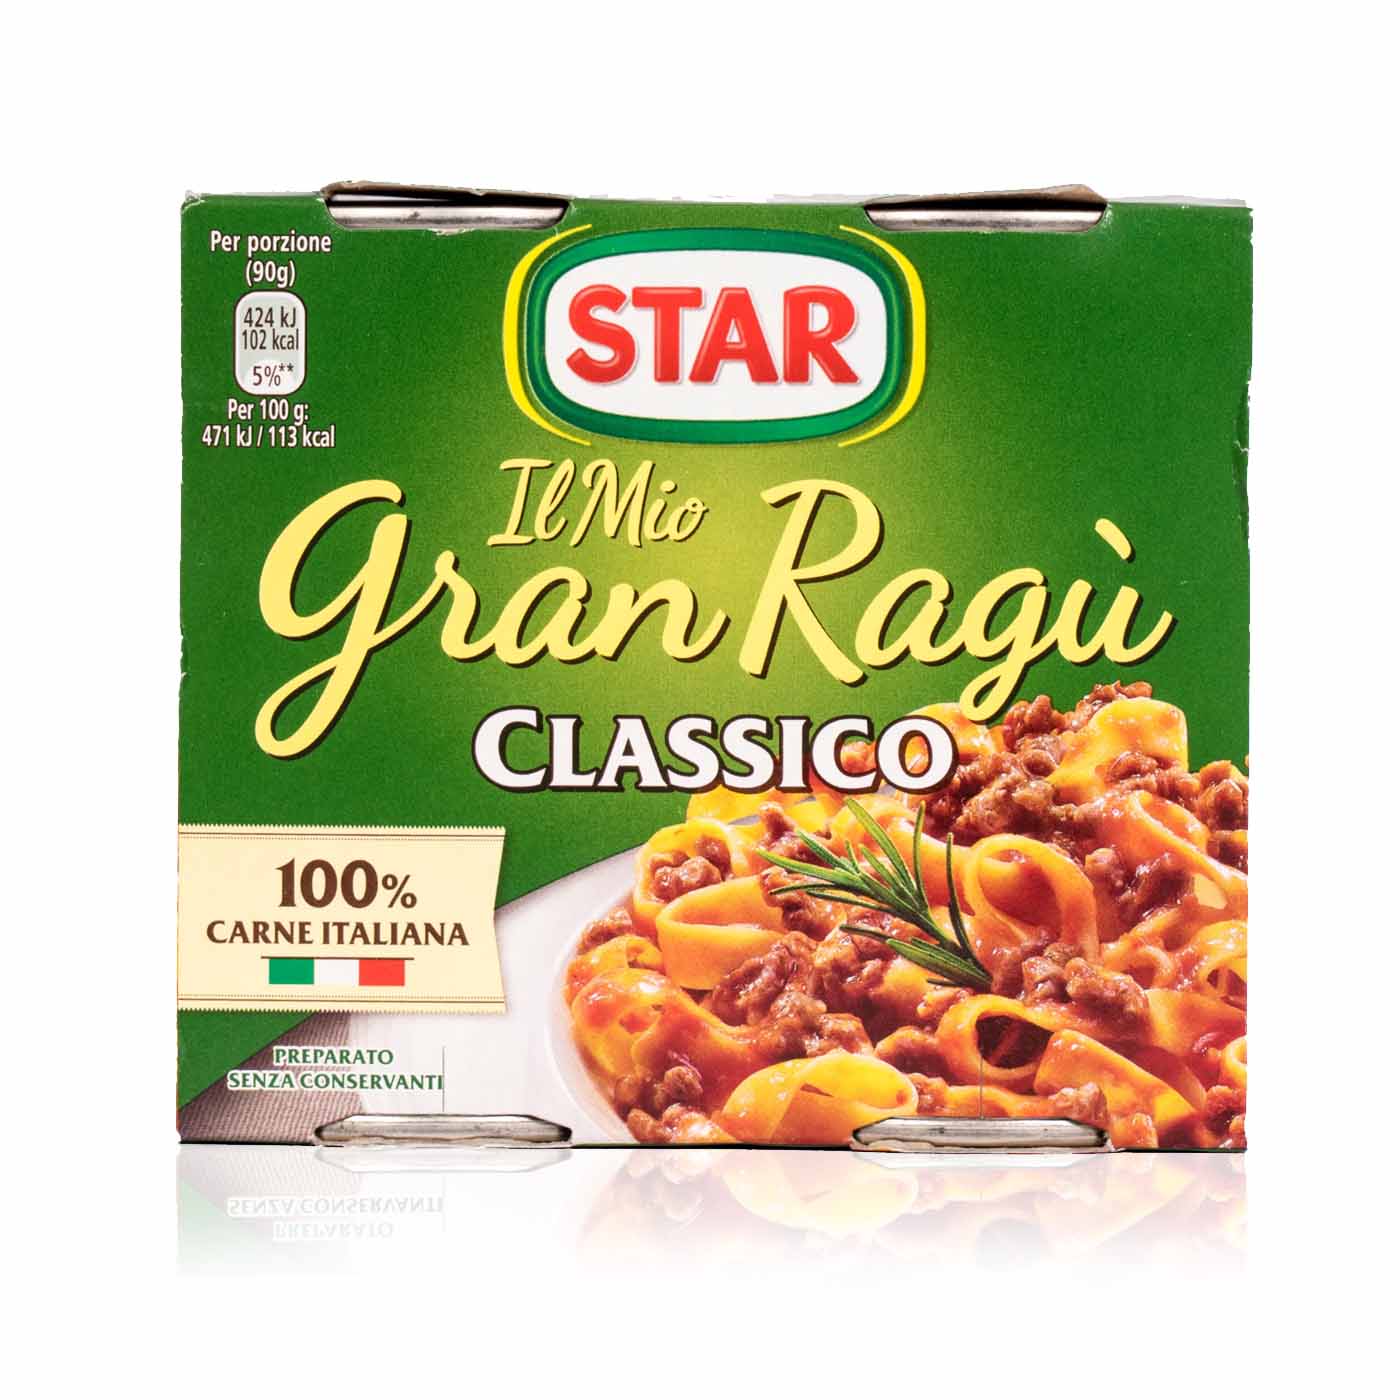 STAR - Gran Ragu Classico - 0,36 kg